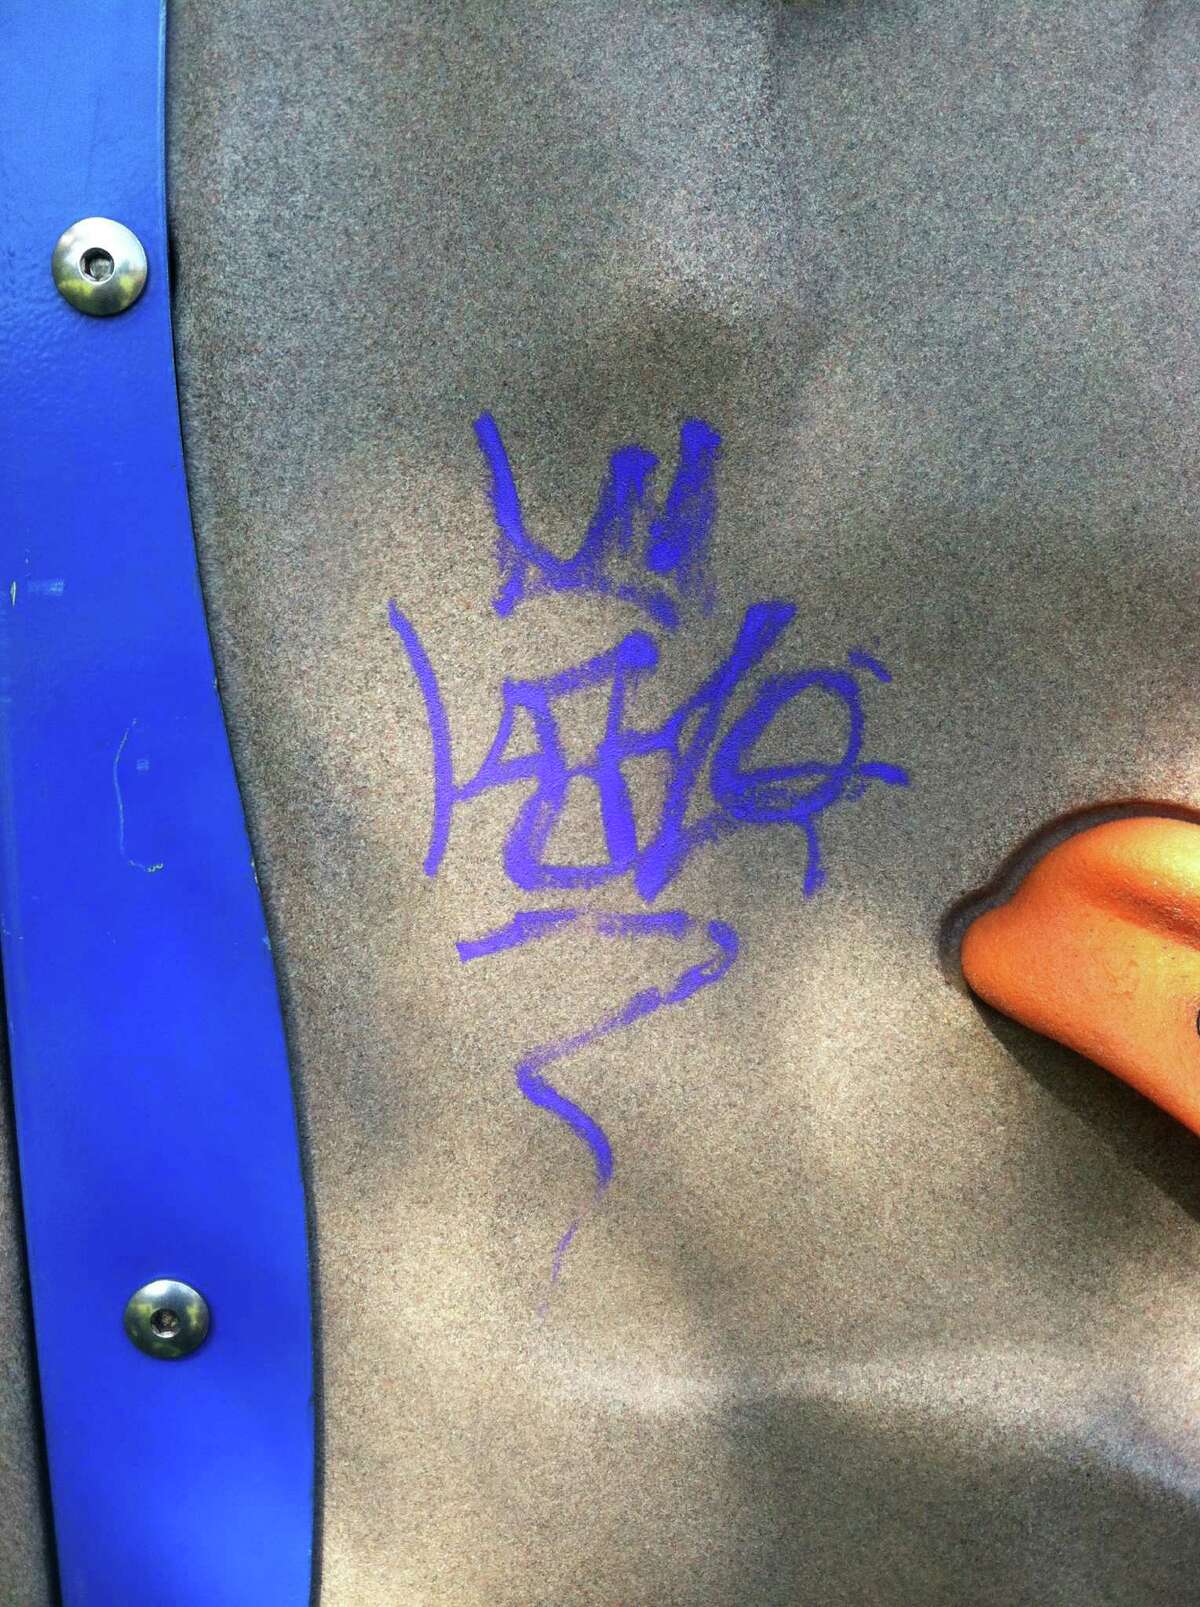 'Gang' graffiti suspected at St. Thomas playground